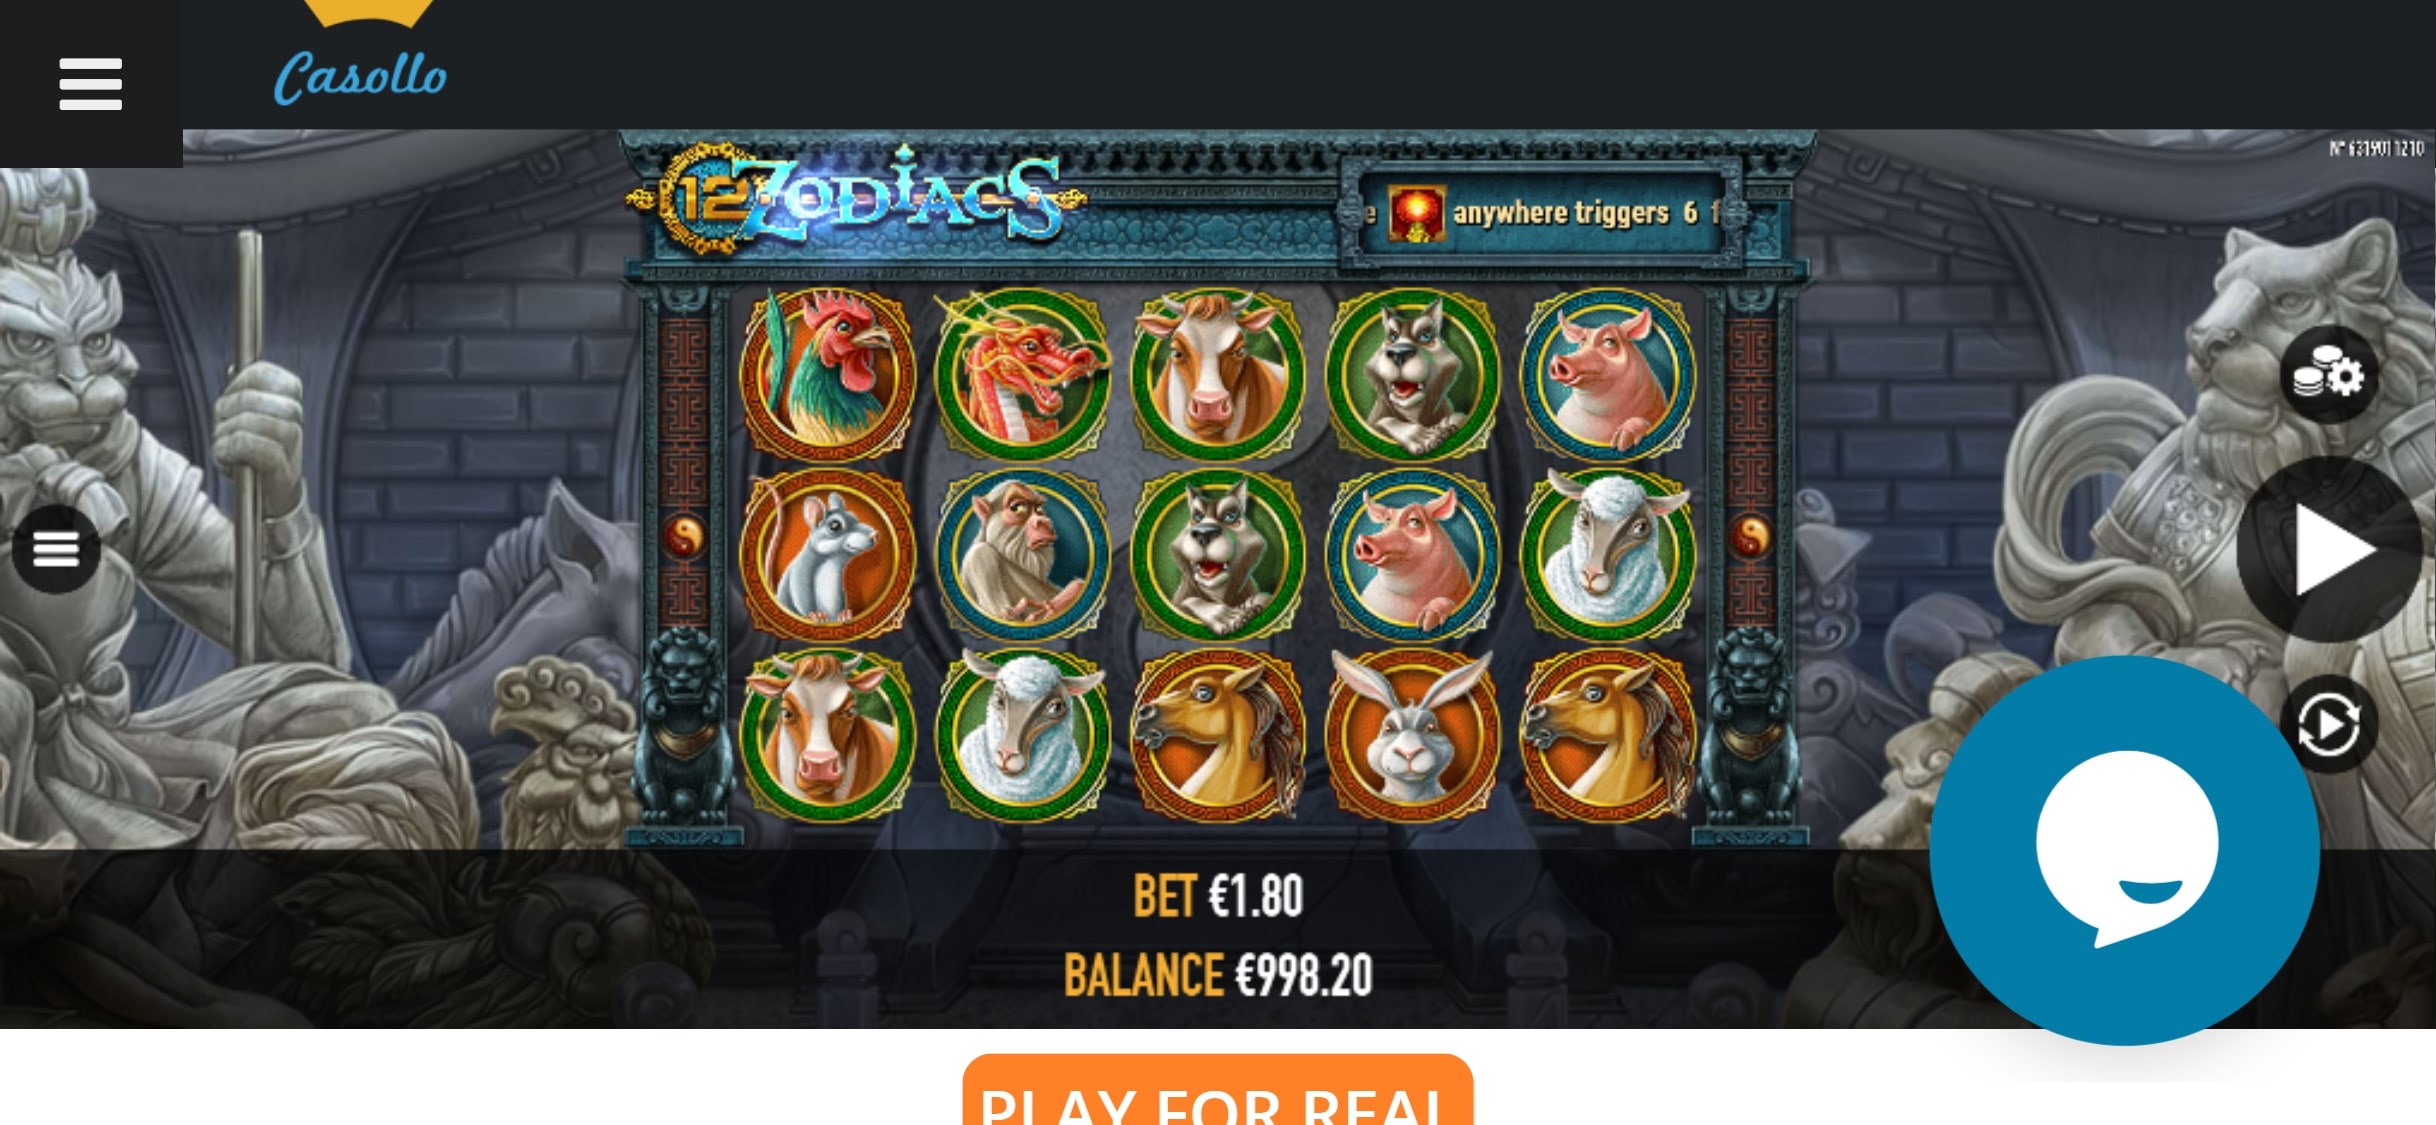 Casoo Casino Mobile Slot Games Review